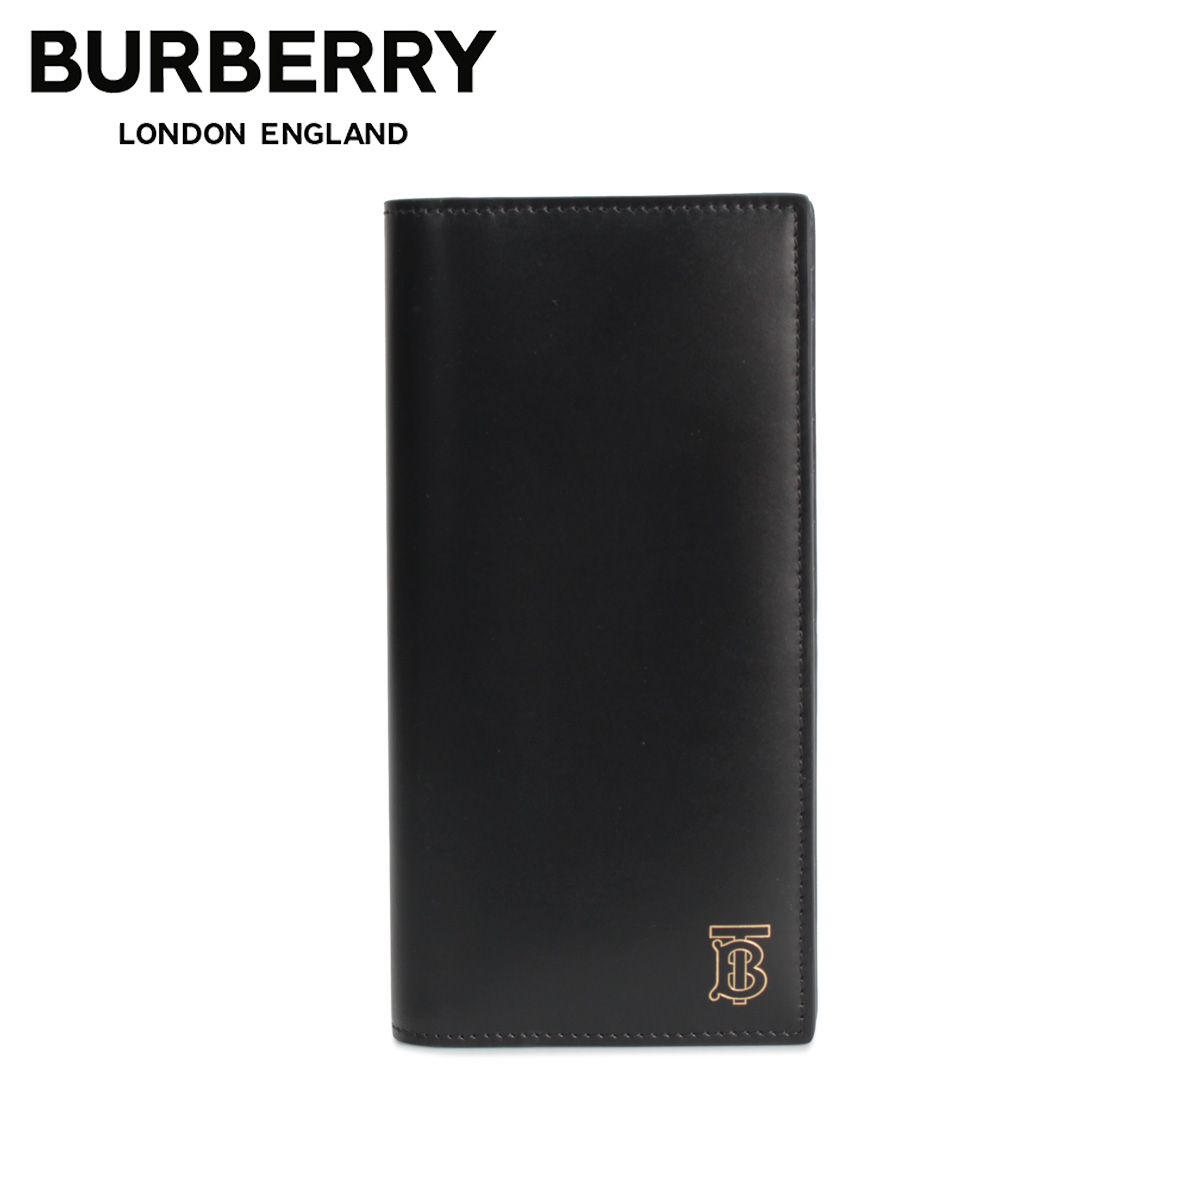 buy burberry wallet online